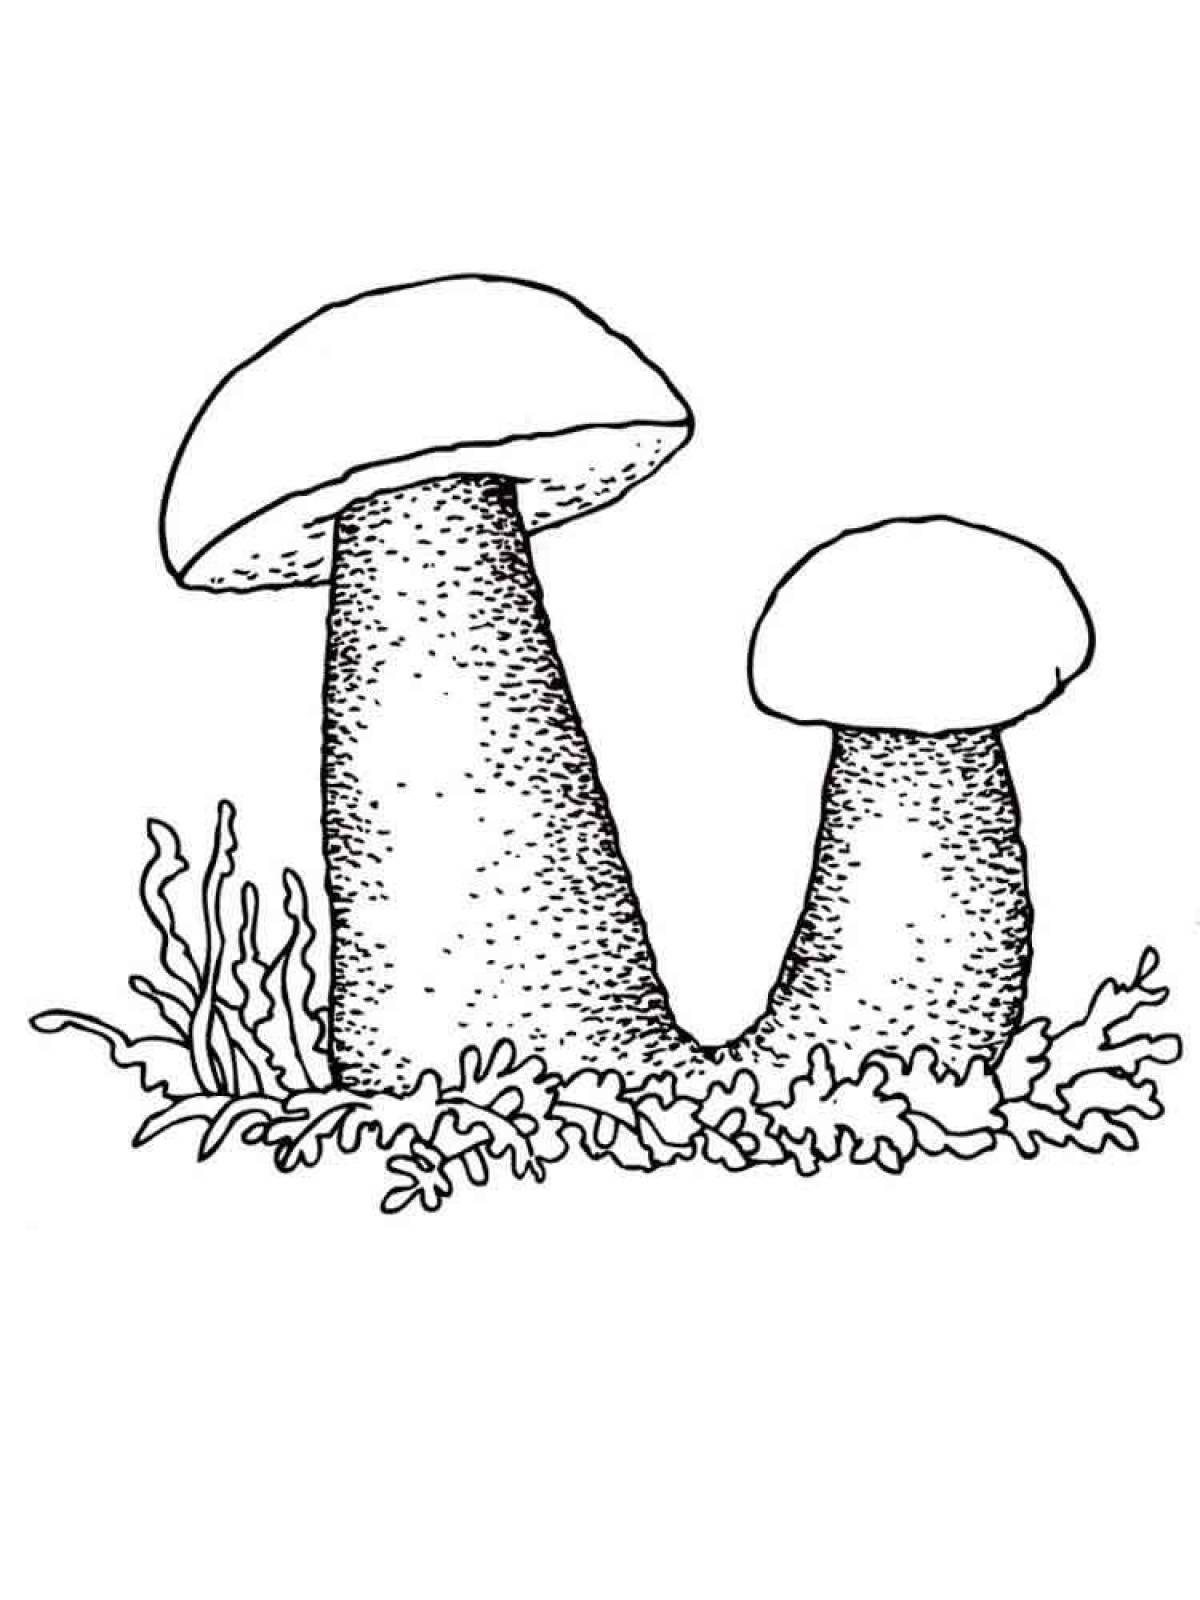 Colored Mushroom Rabid